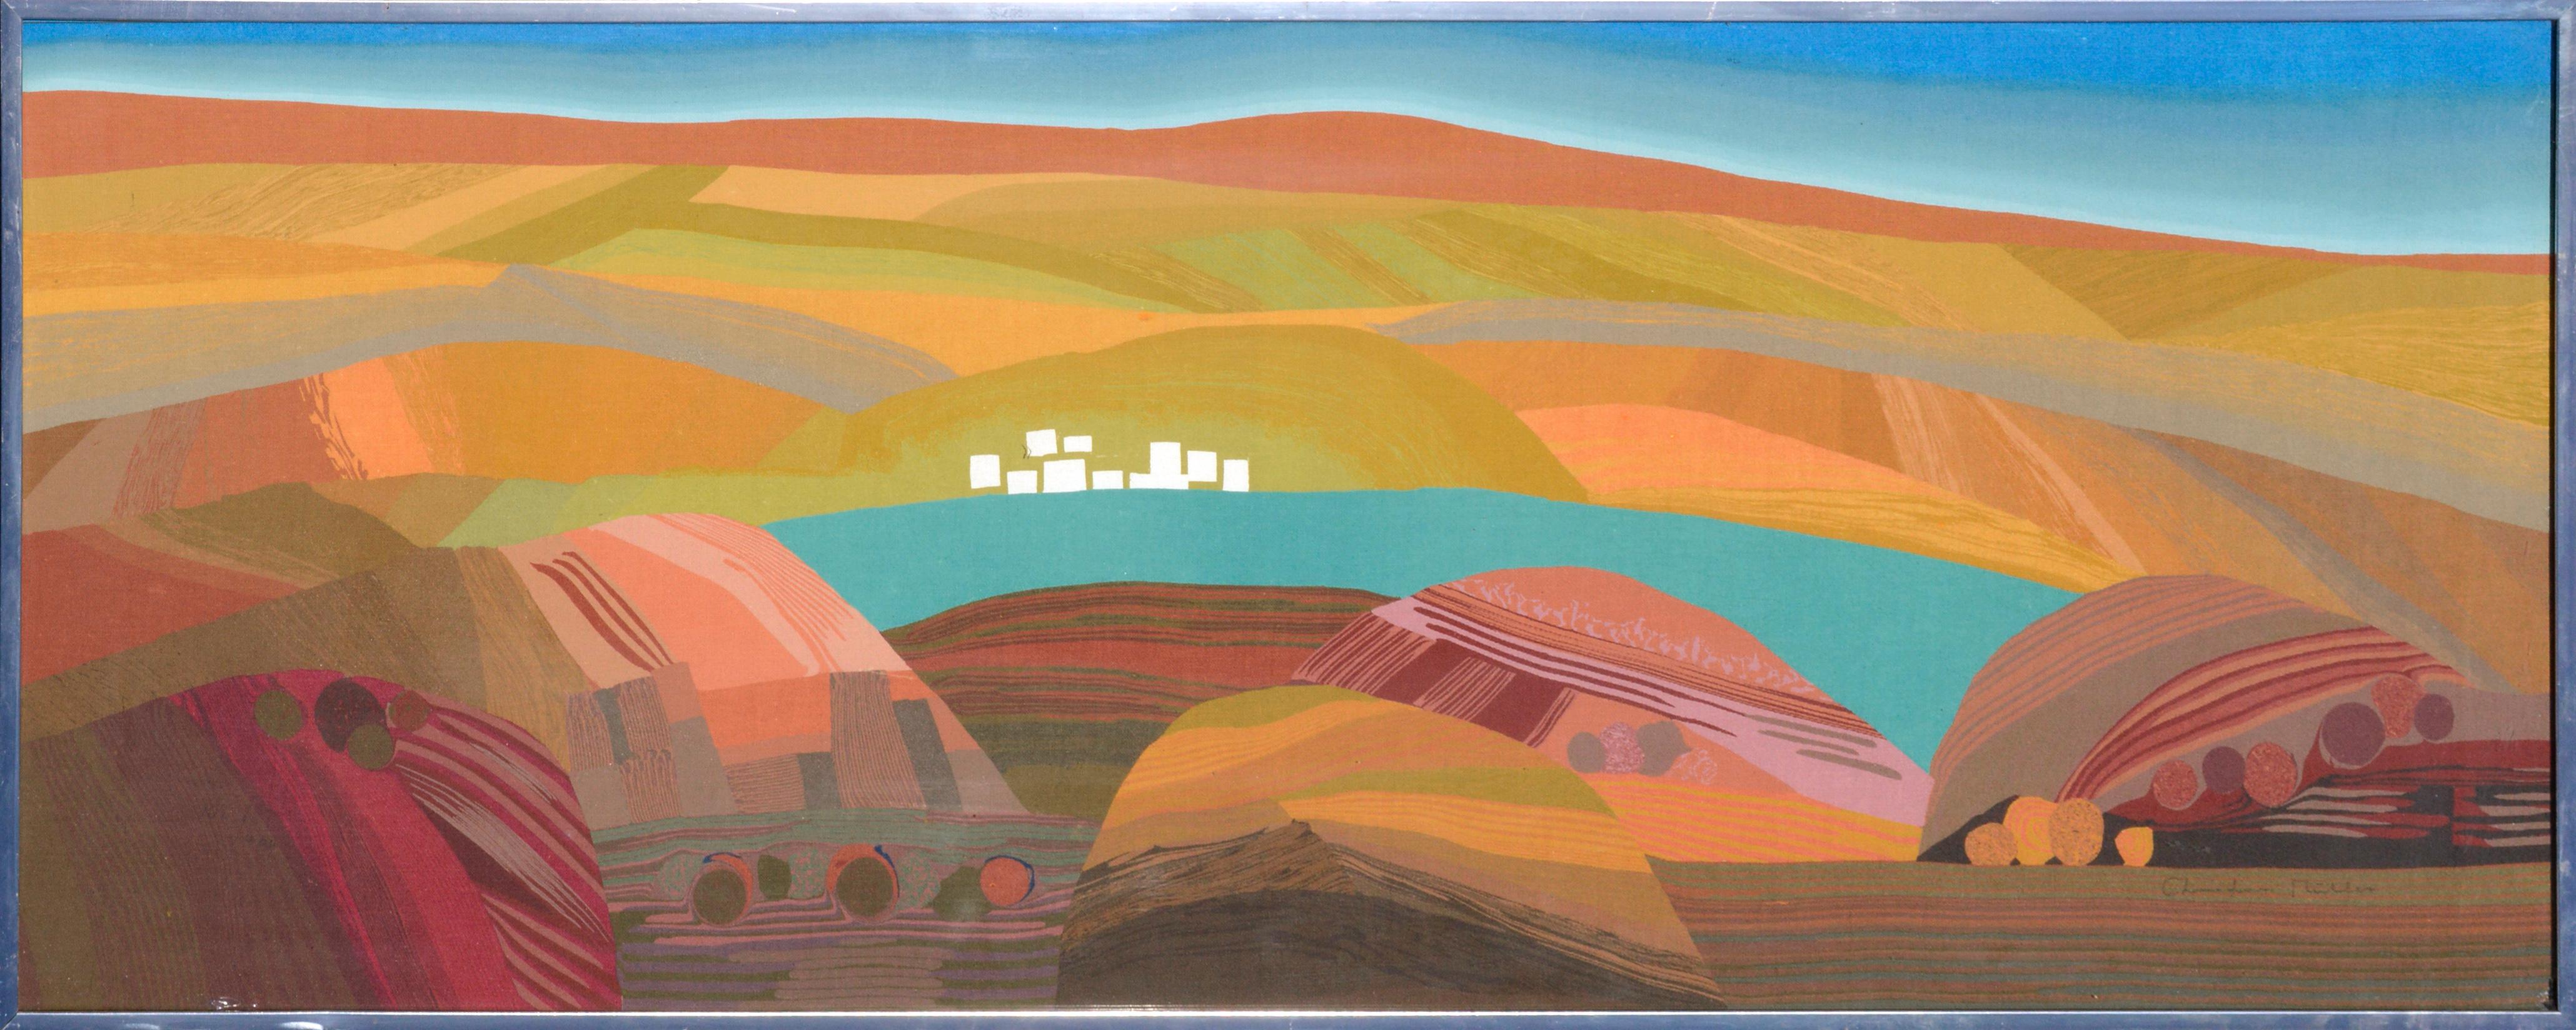 Christian Muller Landscape Print - "Greece" Abstracted Landscape Silkscreen